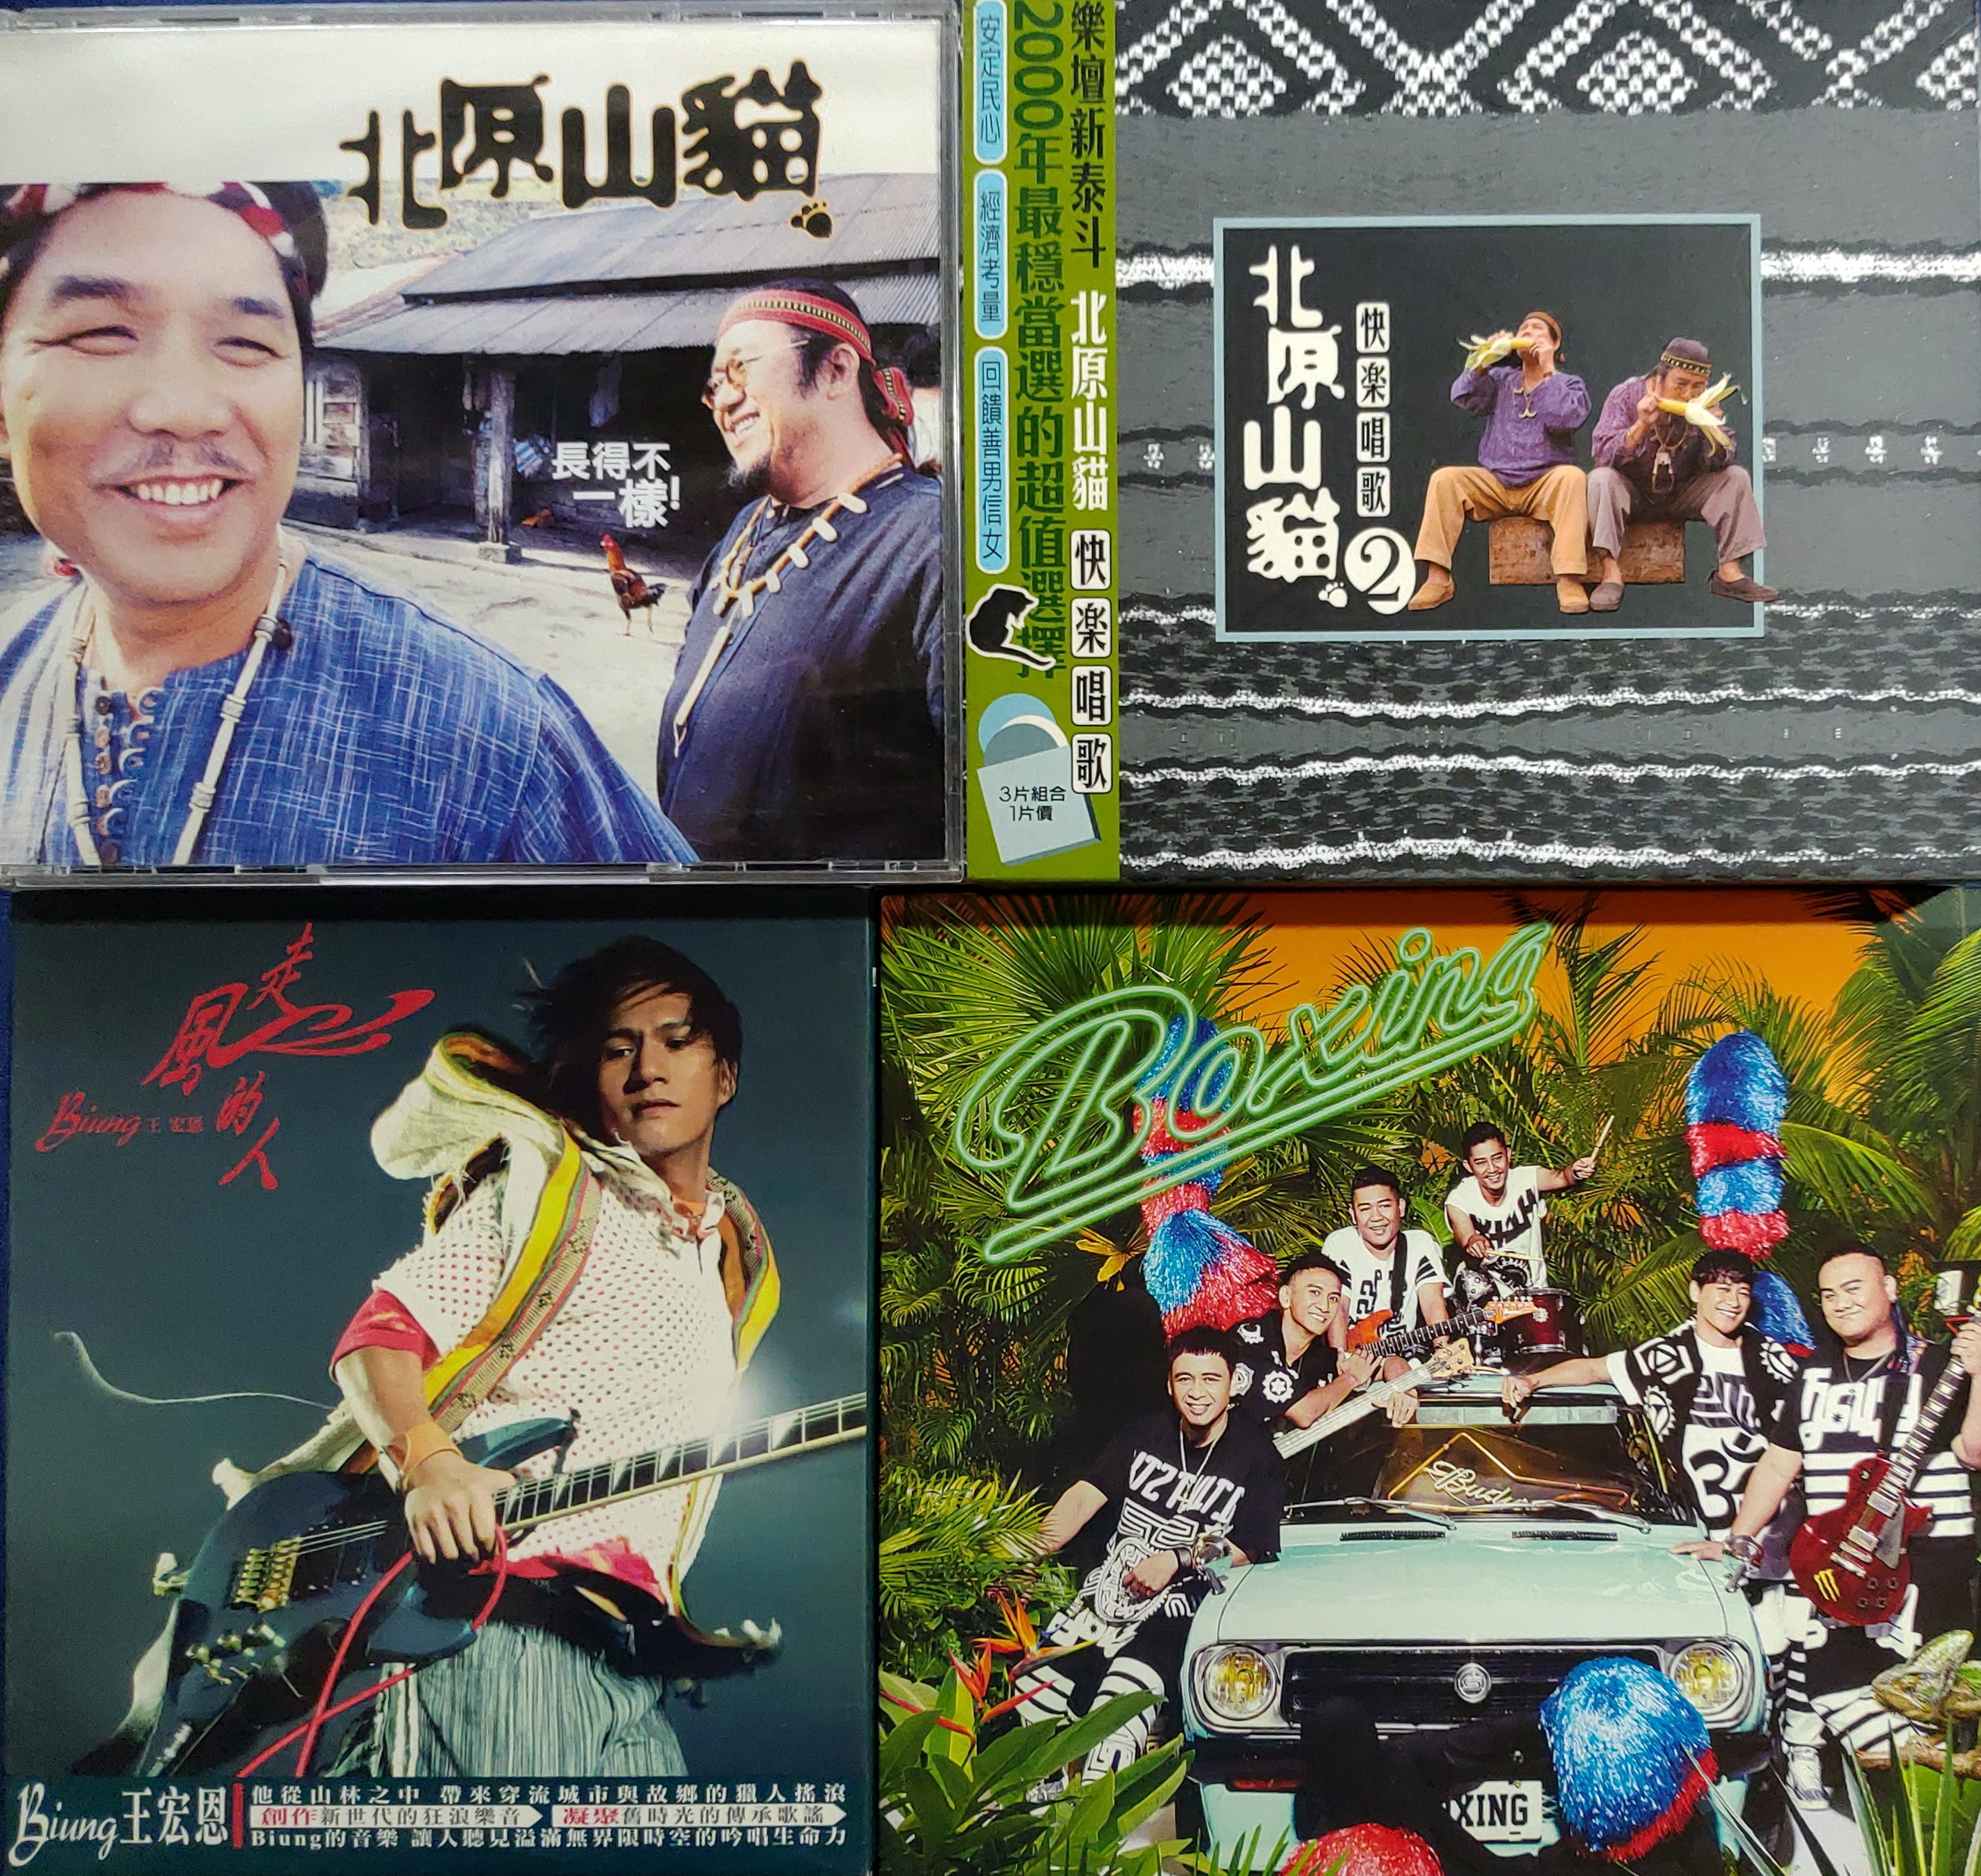 （左上起順時鐘）北原山貓《長得不一樣》、北原山貓《快樂唱歌2》、BOXING樂團《野生BOXING》、王宏恩《走風的人》專輯封面